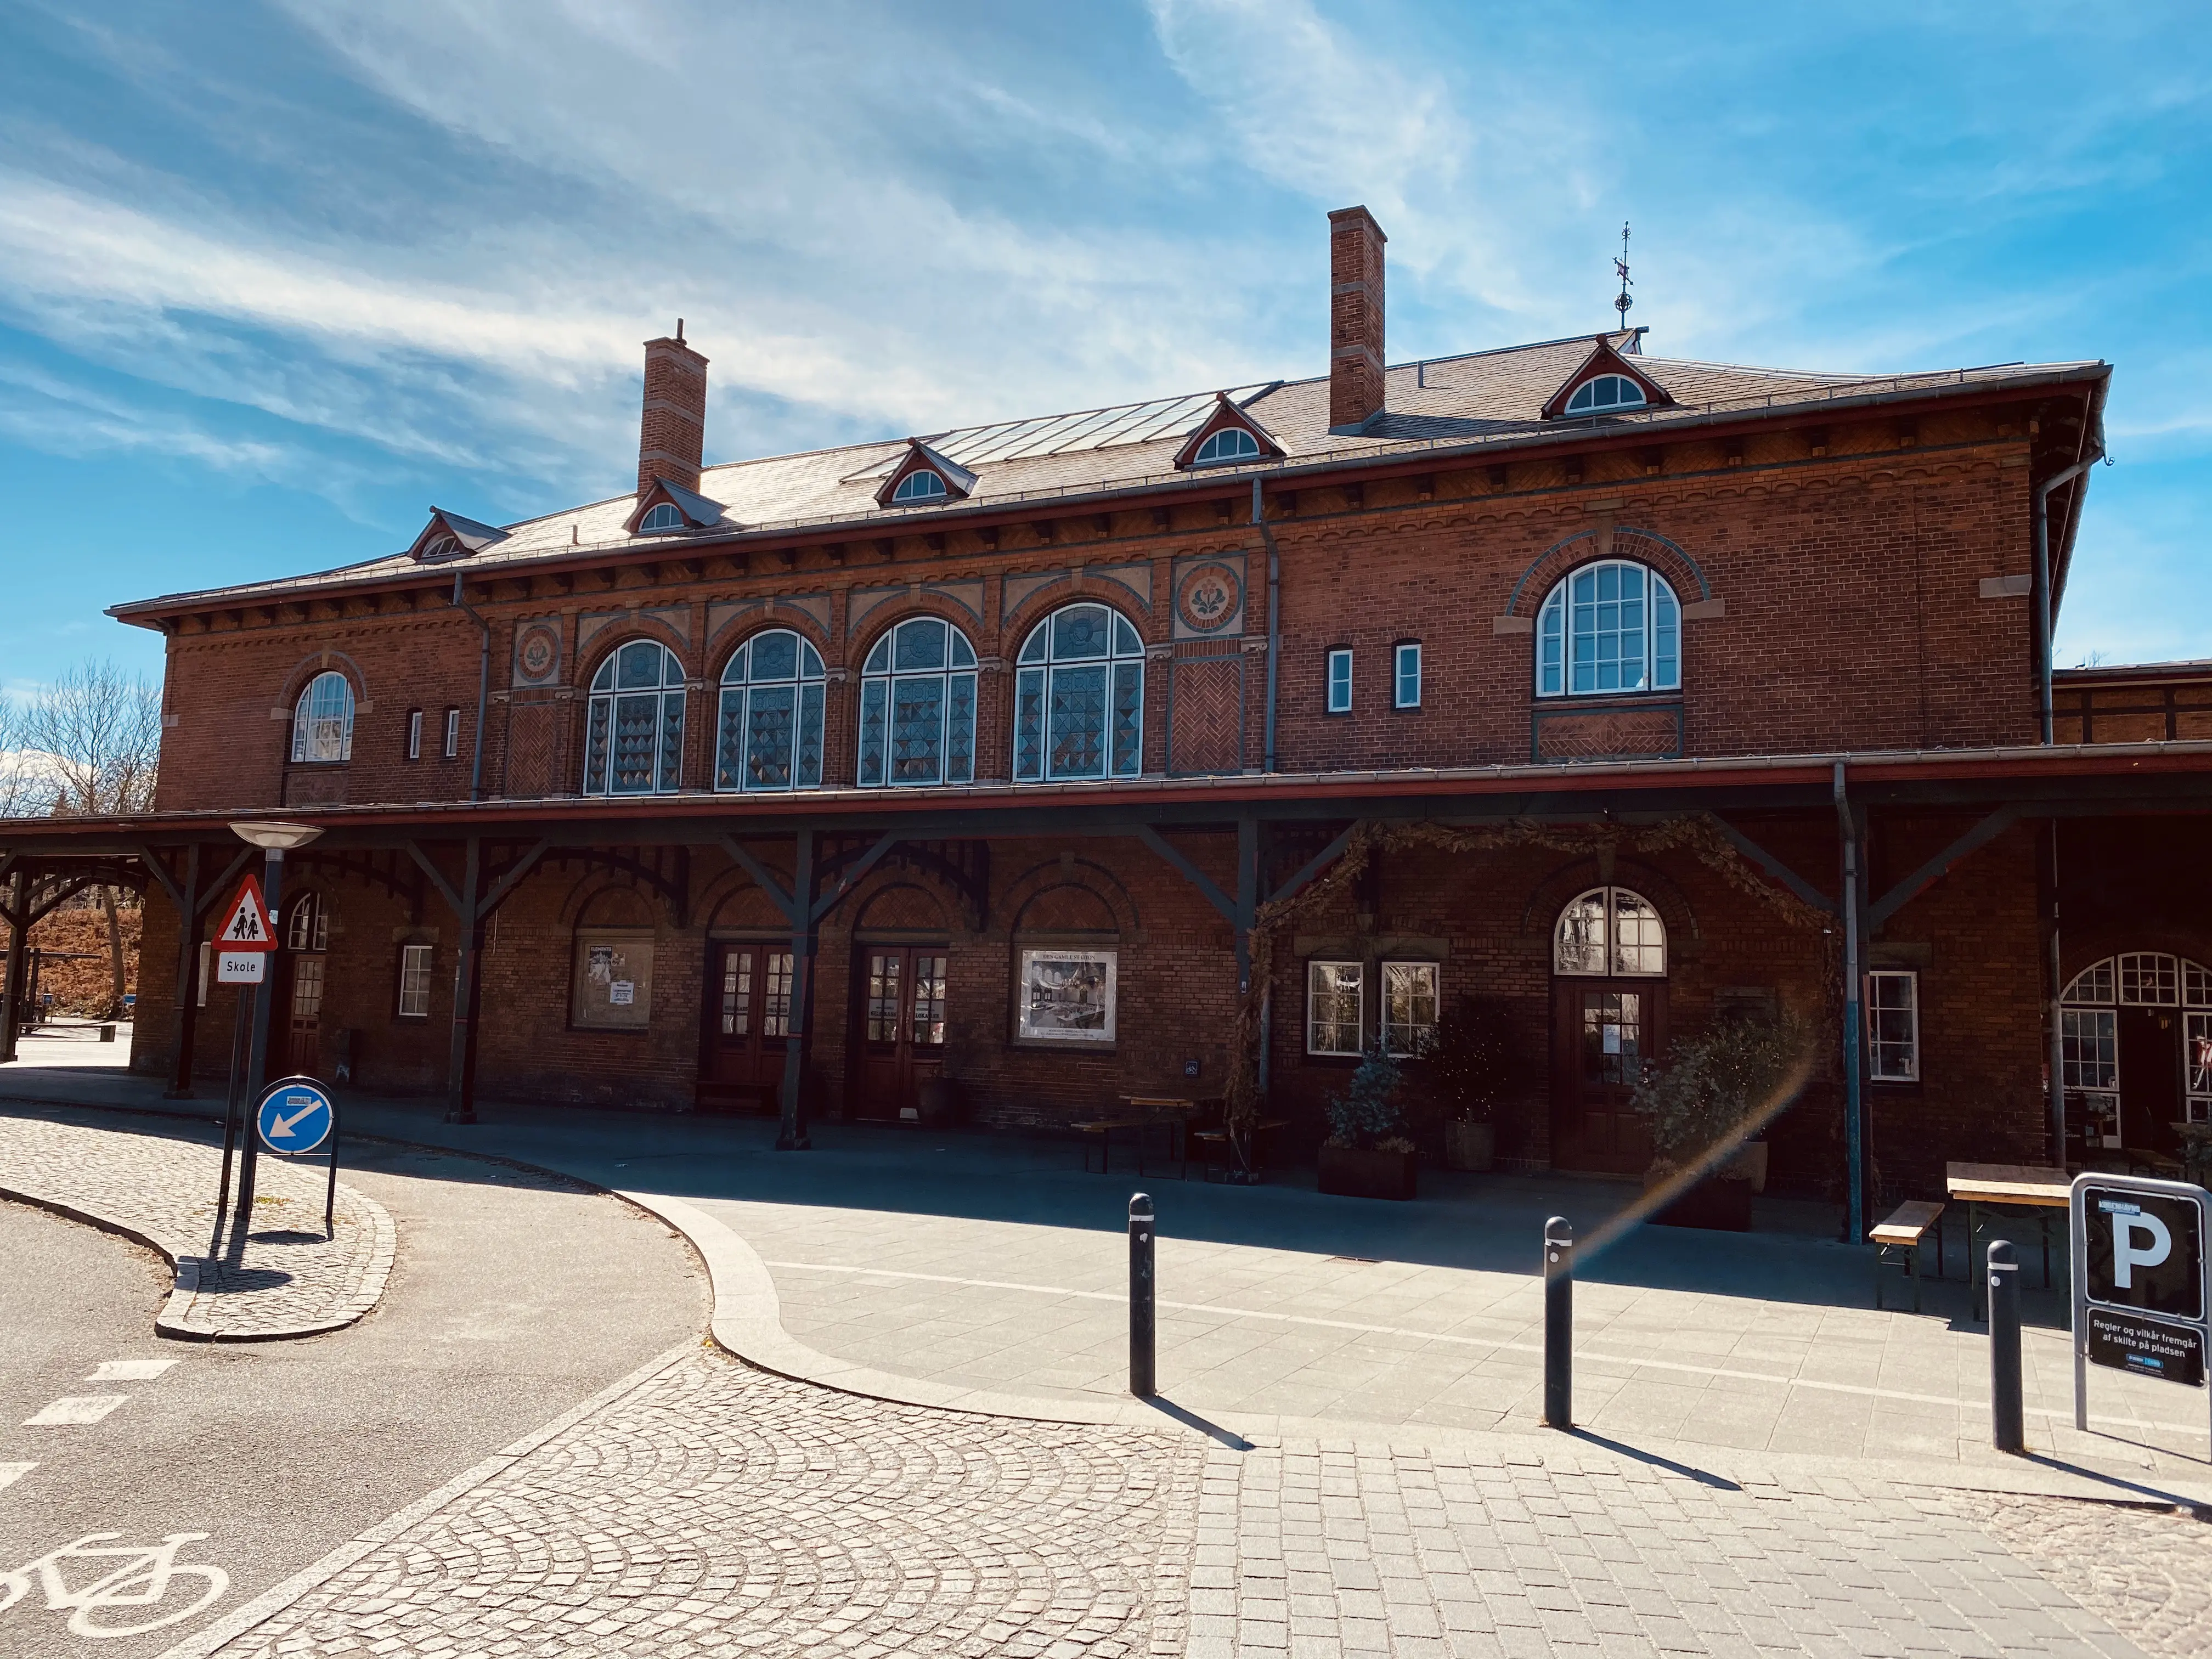 Vedbæk Station.